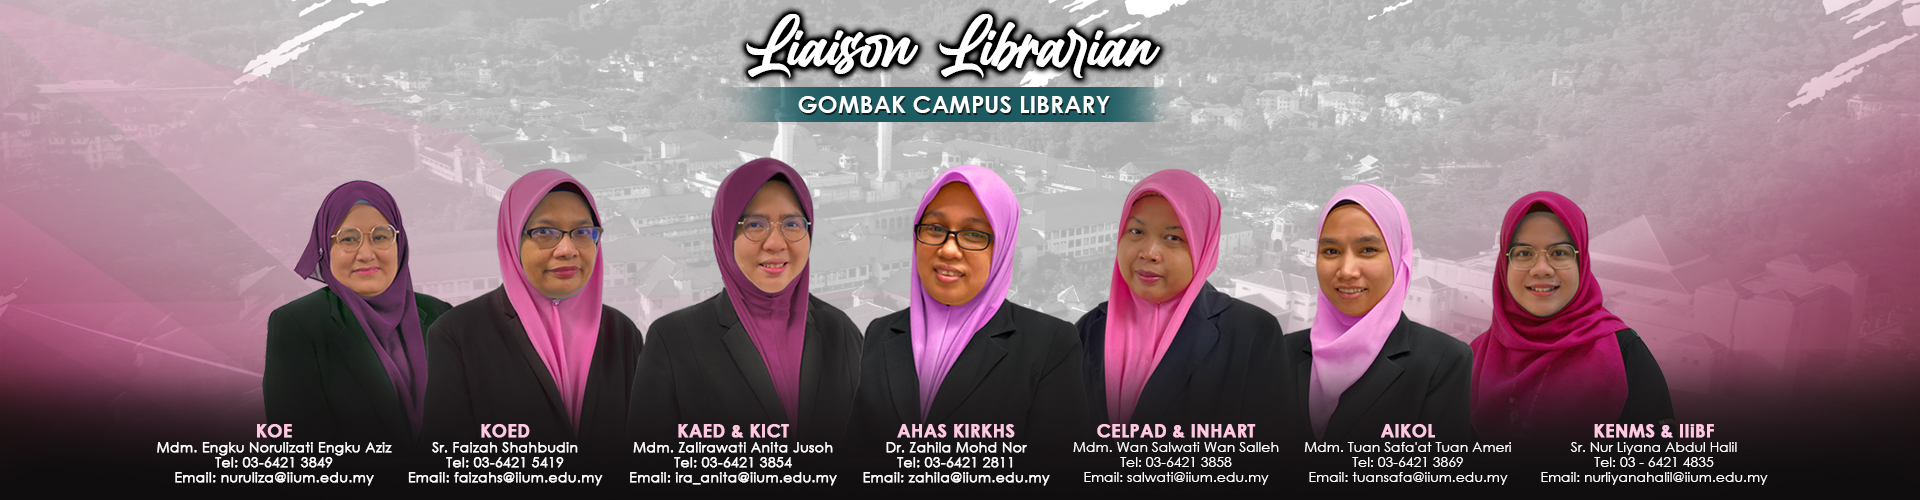 iium-lib-liaison-gombak-campus06